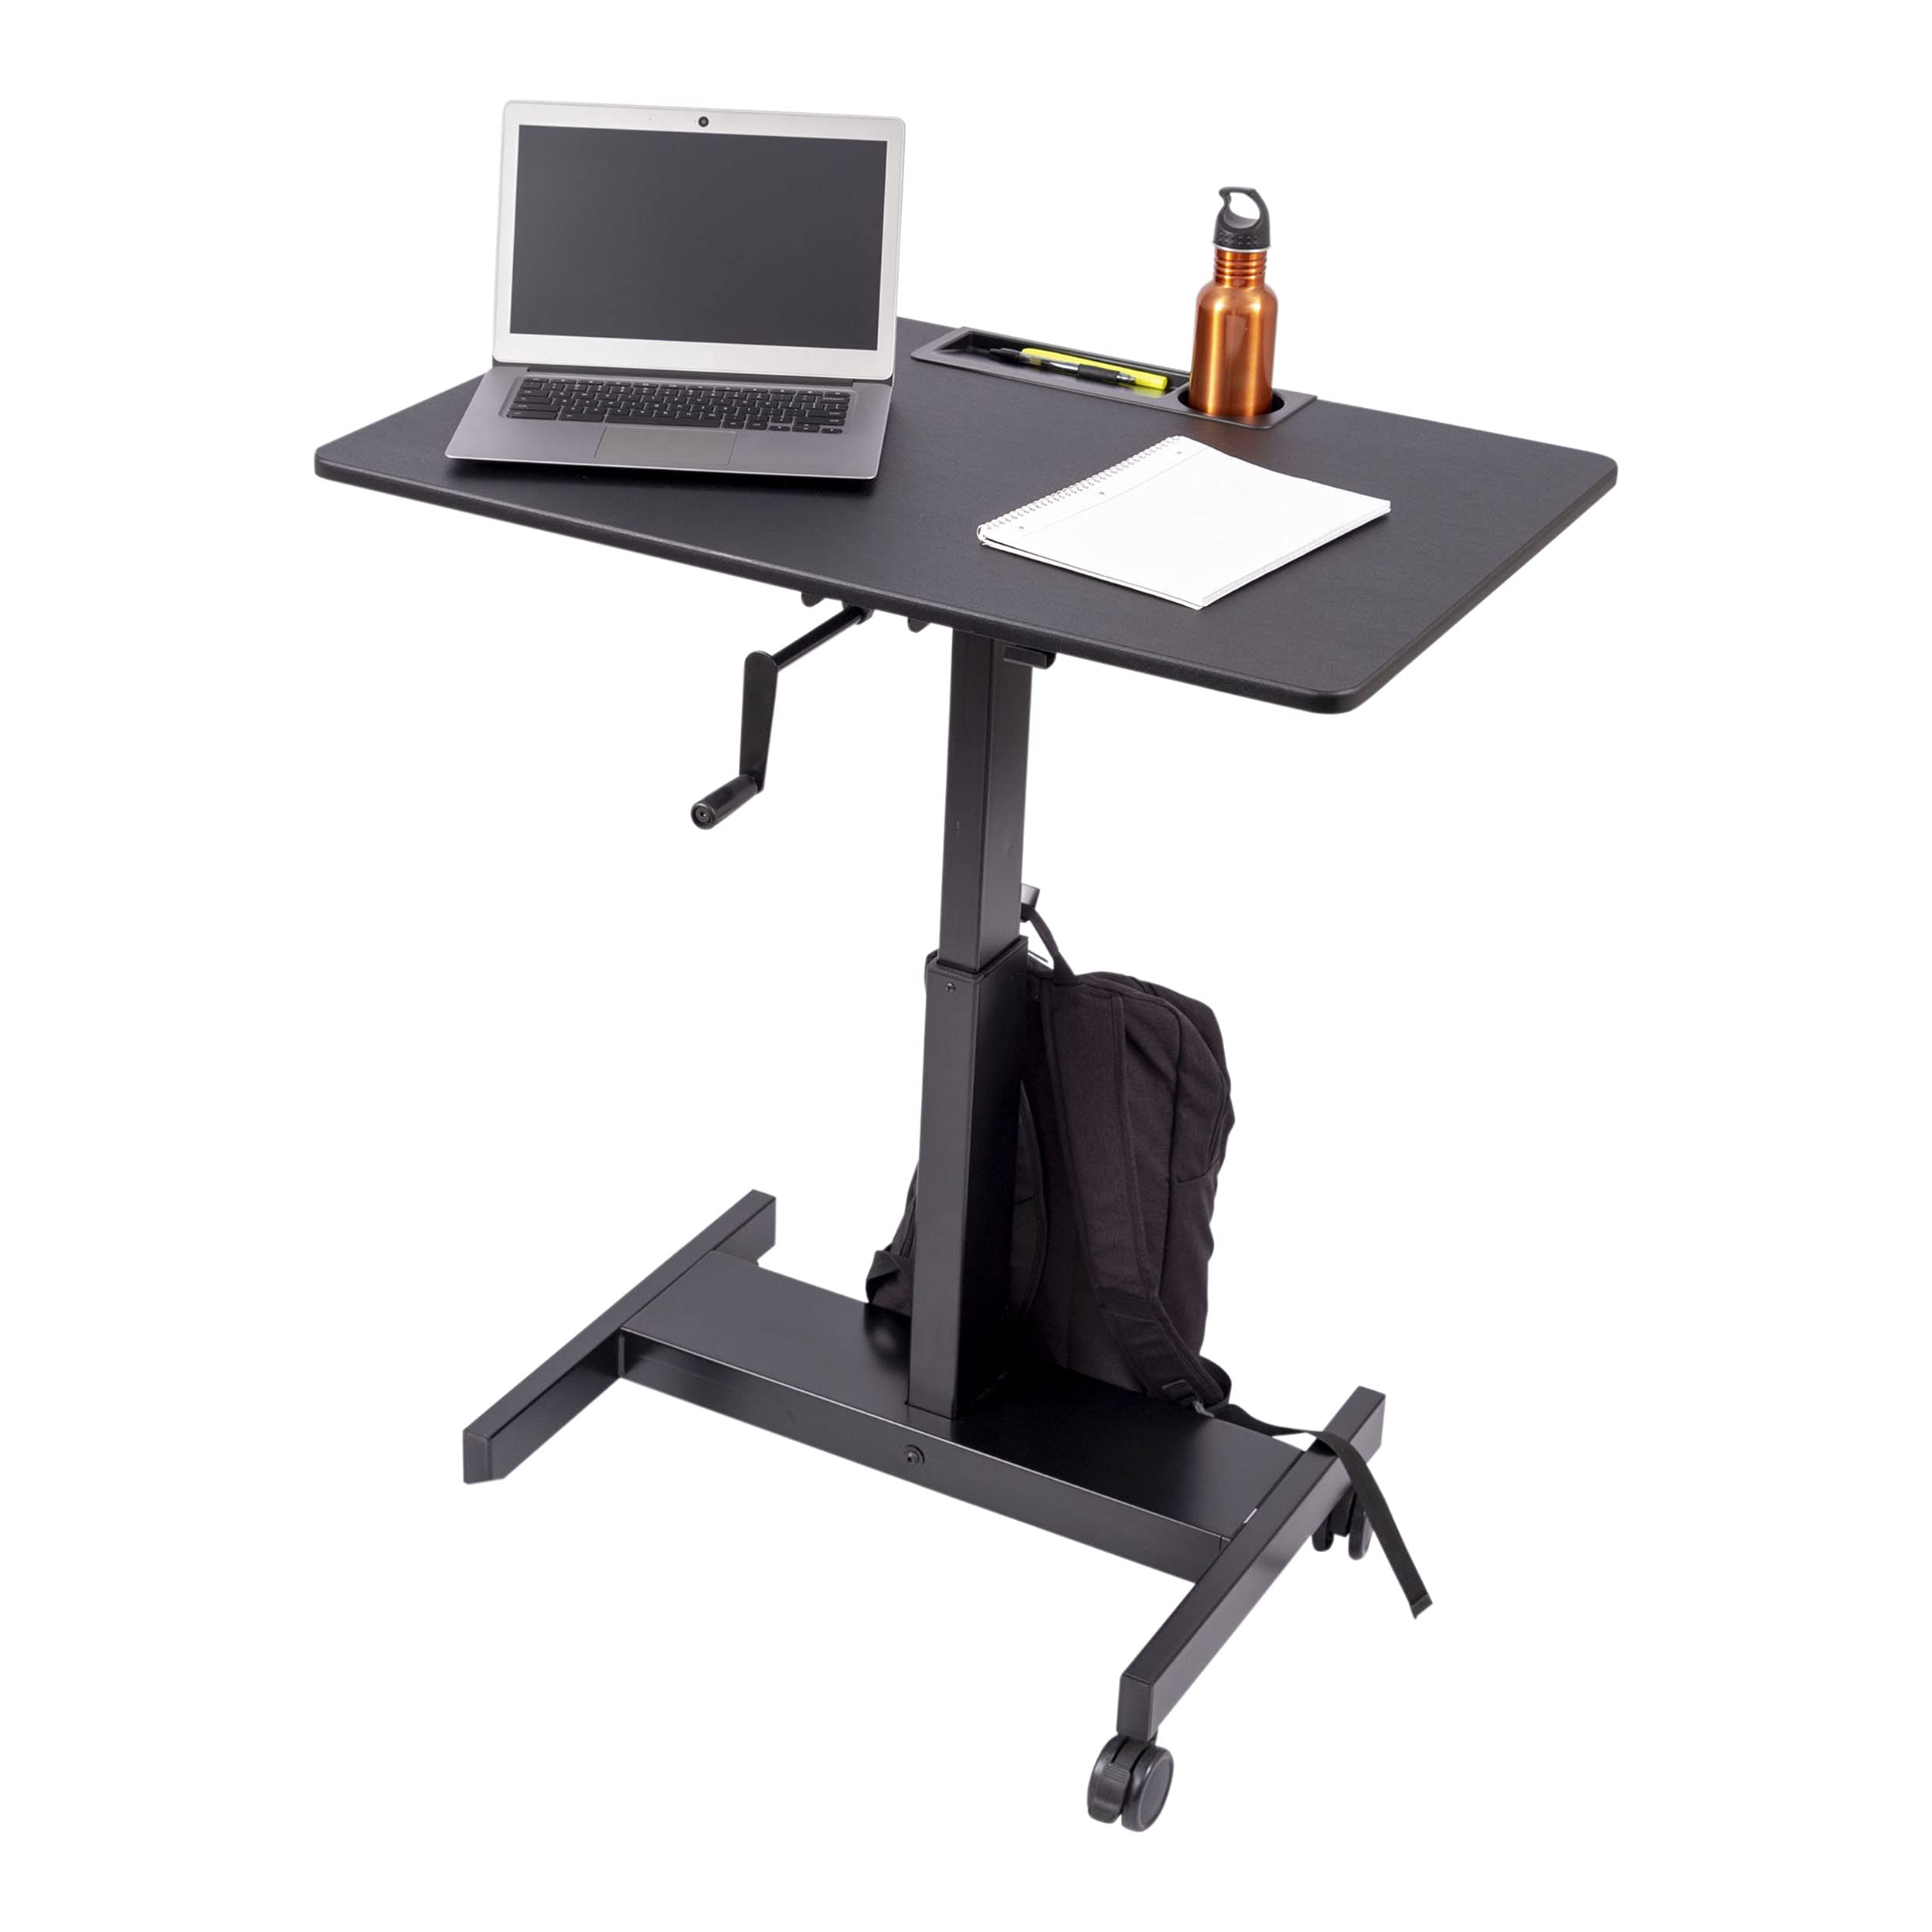 S STAND UP DESK STORE Crank Adjustable Height Single Column Rolling Mobile Standing Desk (Black Frame/Black Top, 36 inch Wide)